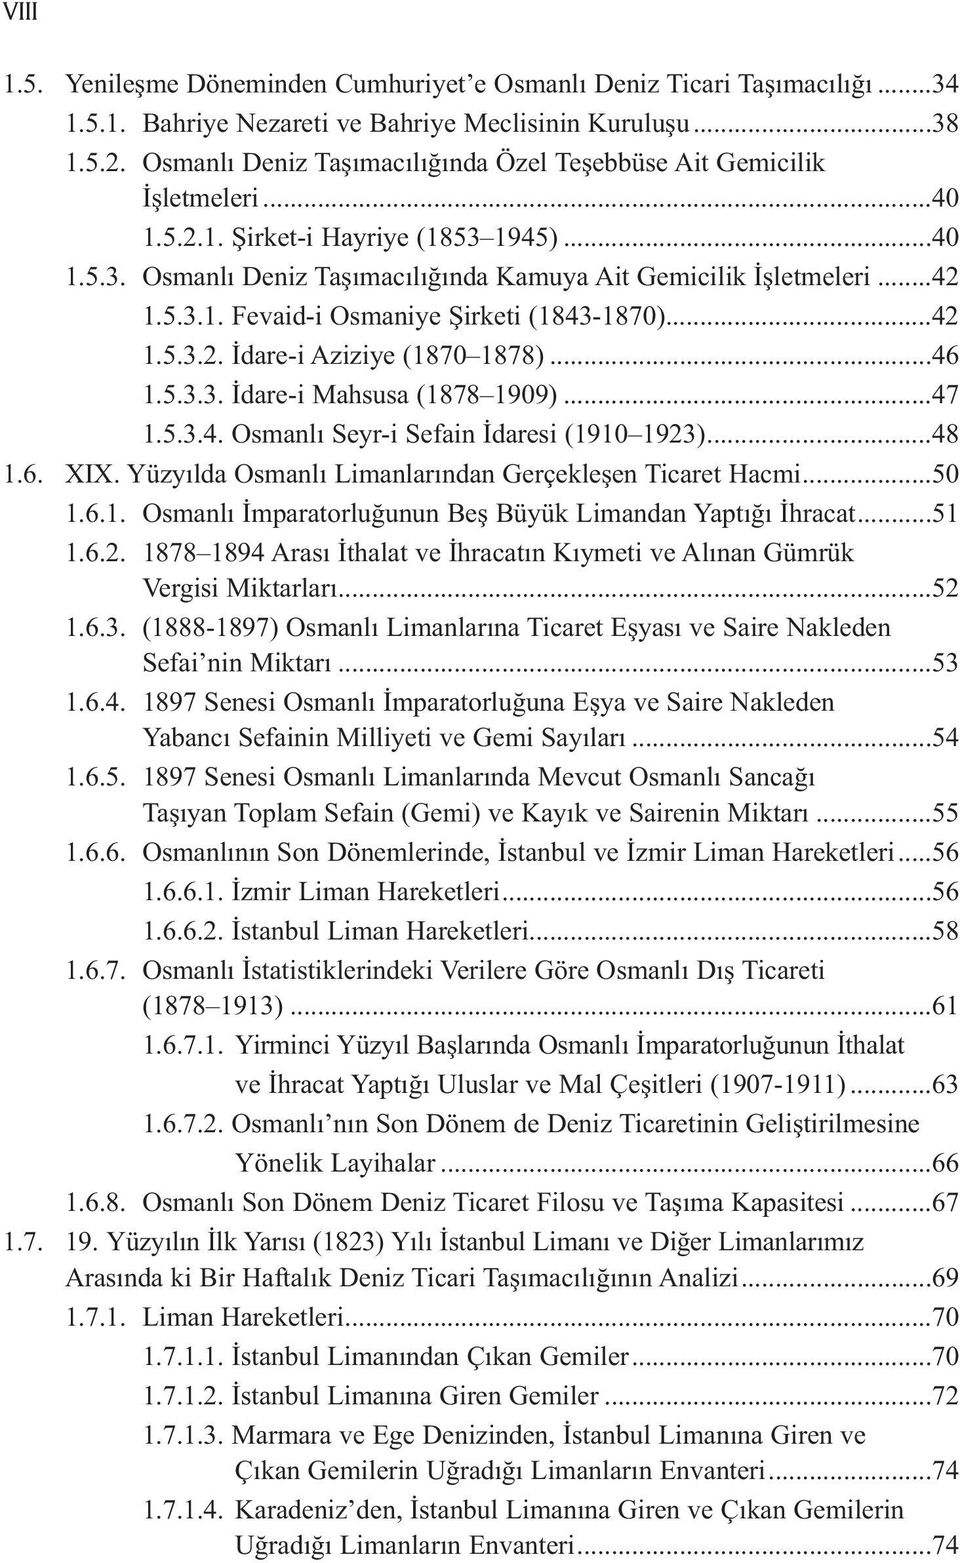 ..42 1.5.3.2. İdare-i Aziziye (1870 1878)...46 1.5.3.3. İdare-i Mahsusa (1878 1909)...47 1.5.3.4. Osmanlı Seyr-i Sefain İdaresi (1910 1923)...48 1.6. XIX.